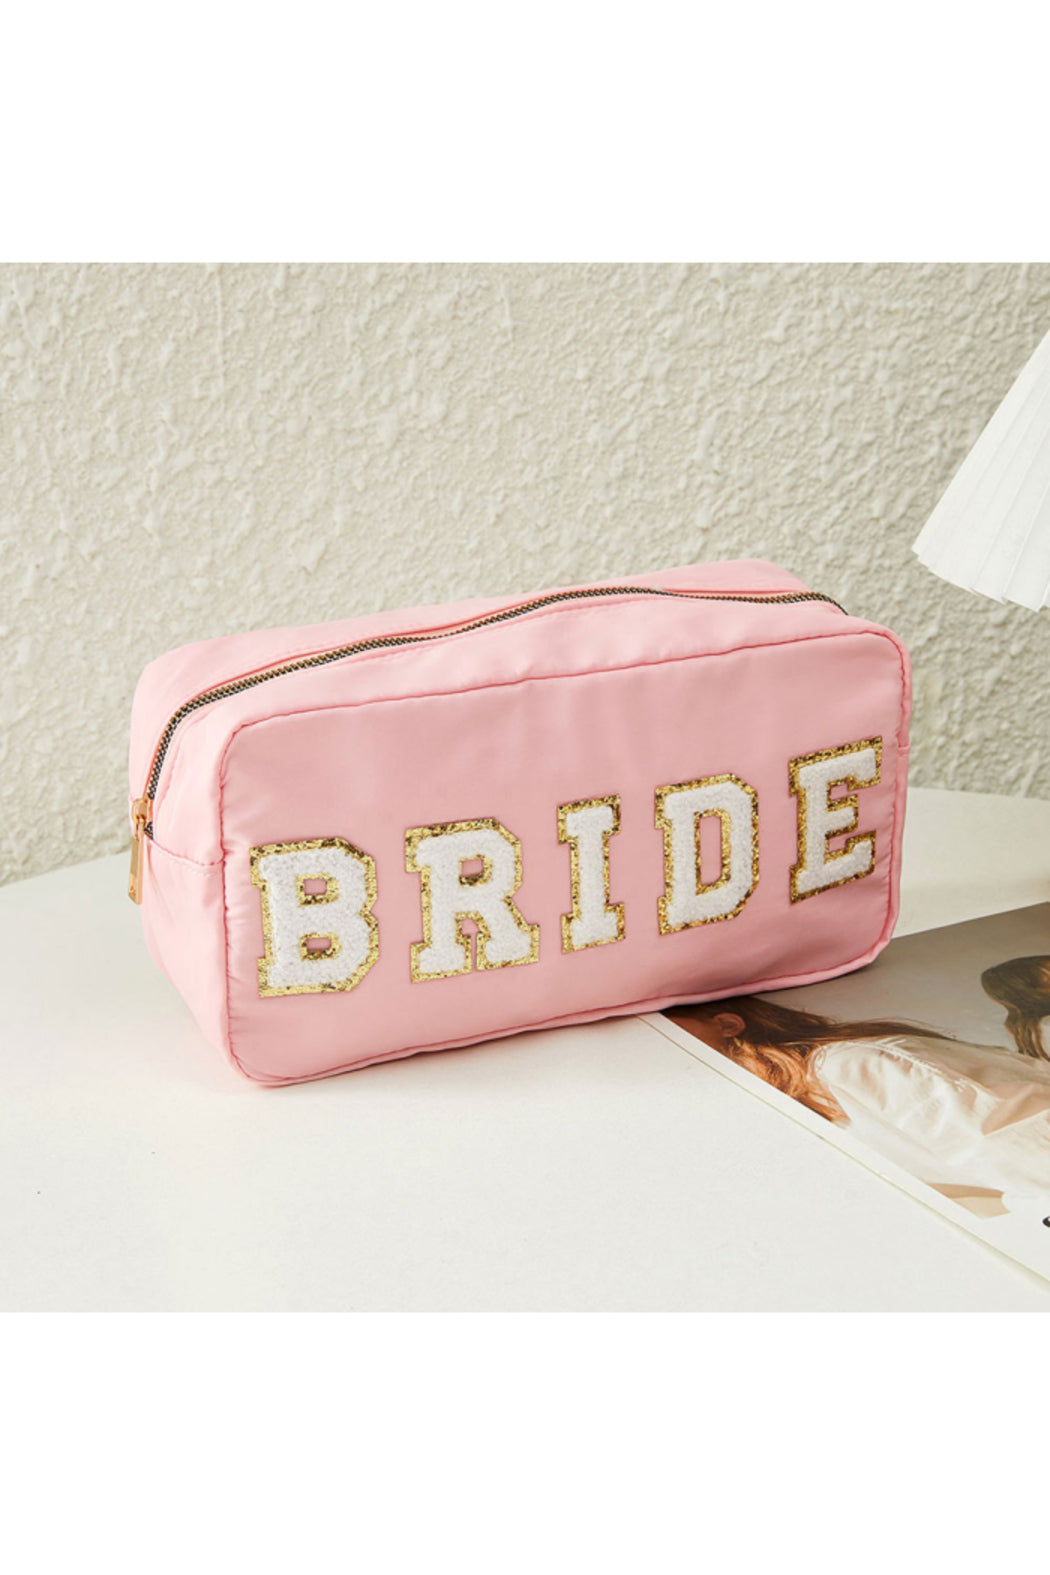 Bride Small Cosmetic Bag (Splosh) - Baby's Breath Bridesmaids